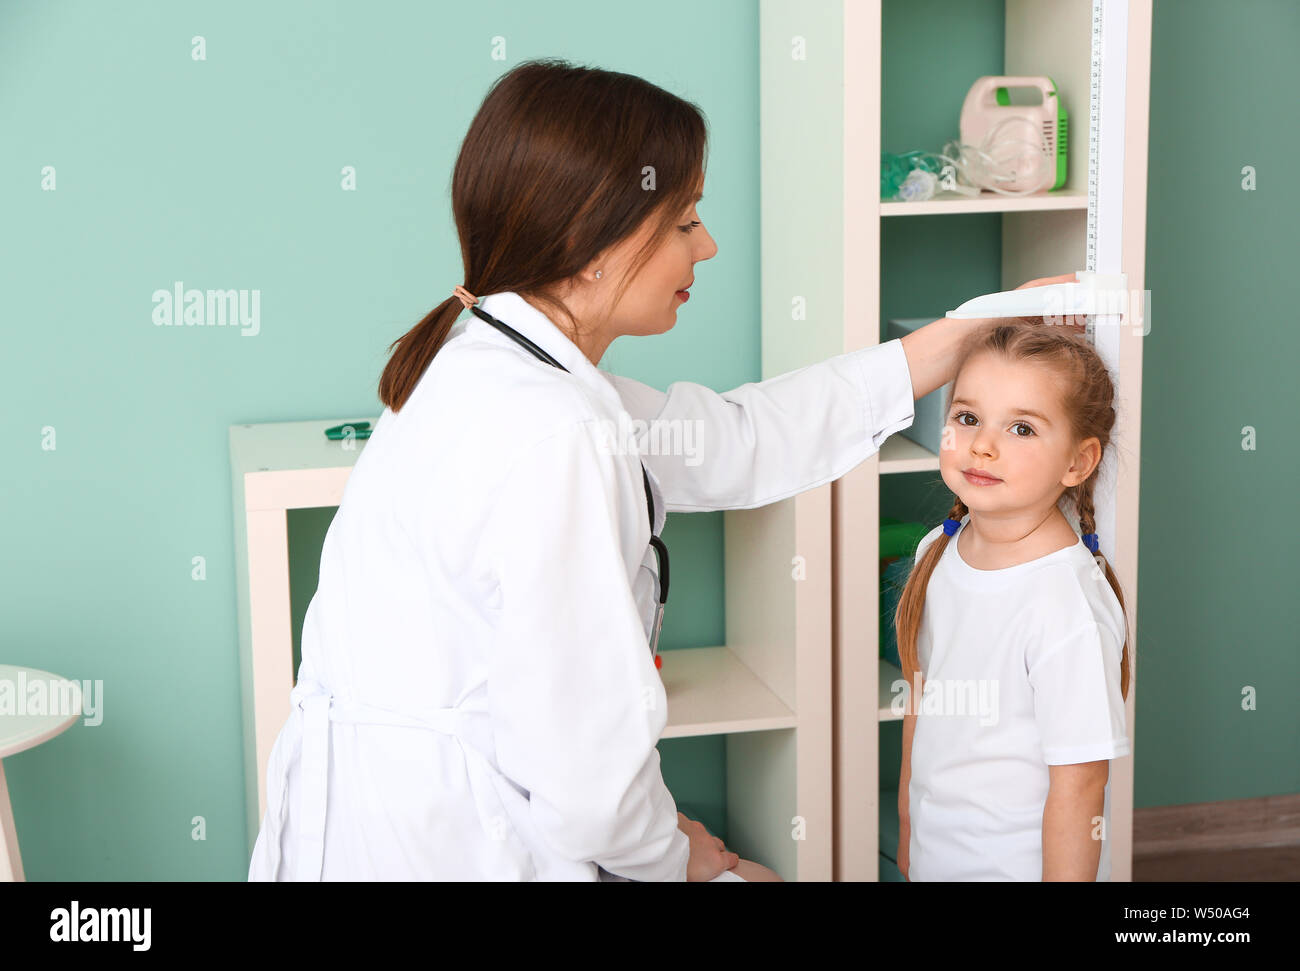 Female doctor measuring height of little girl in hospital Stock Photo